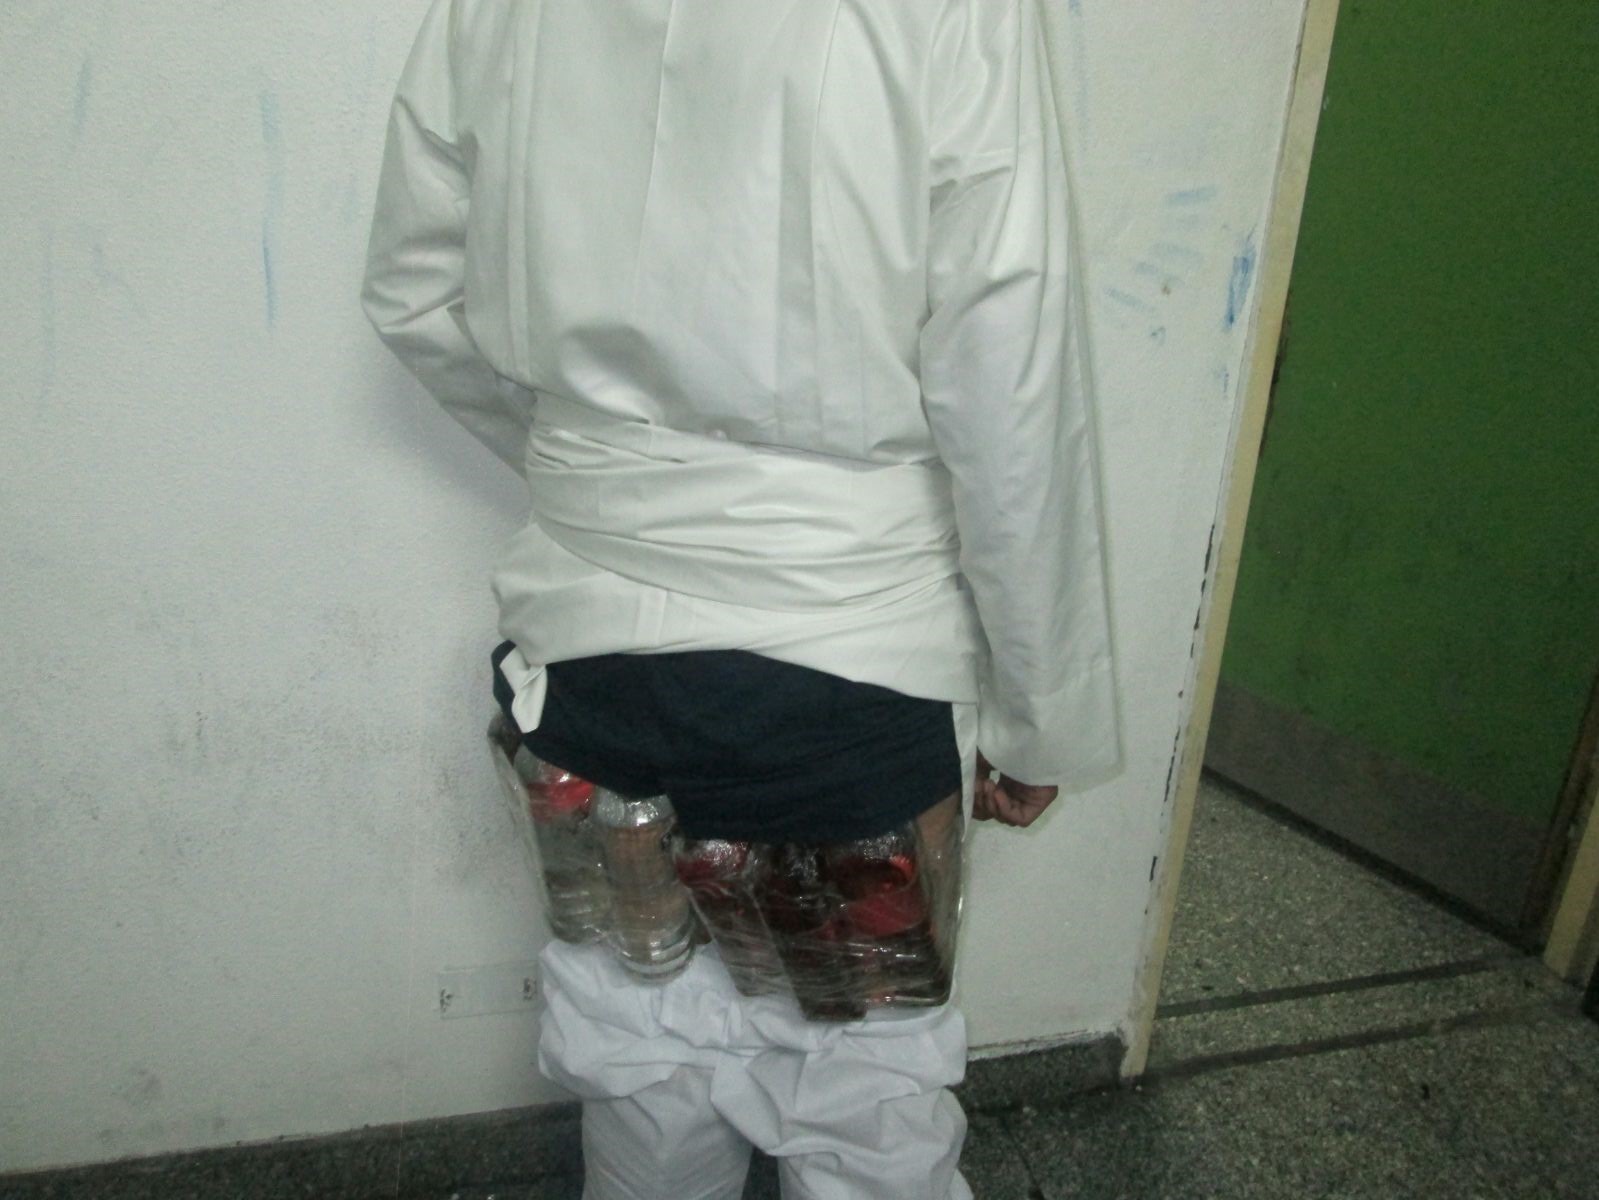 شاهد بالصور أغرب عملية تهريب لـ 14 زجاجة خمر في جسد ومؤخرة مواطن سعودي